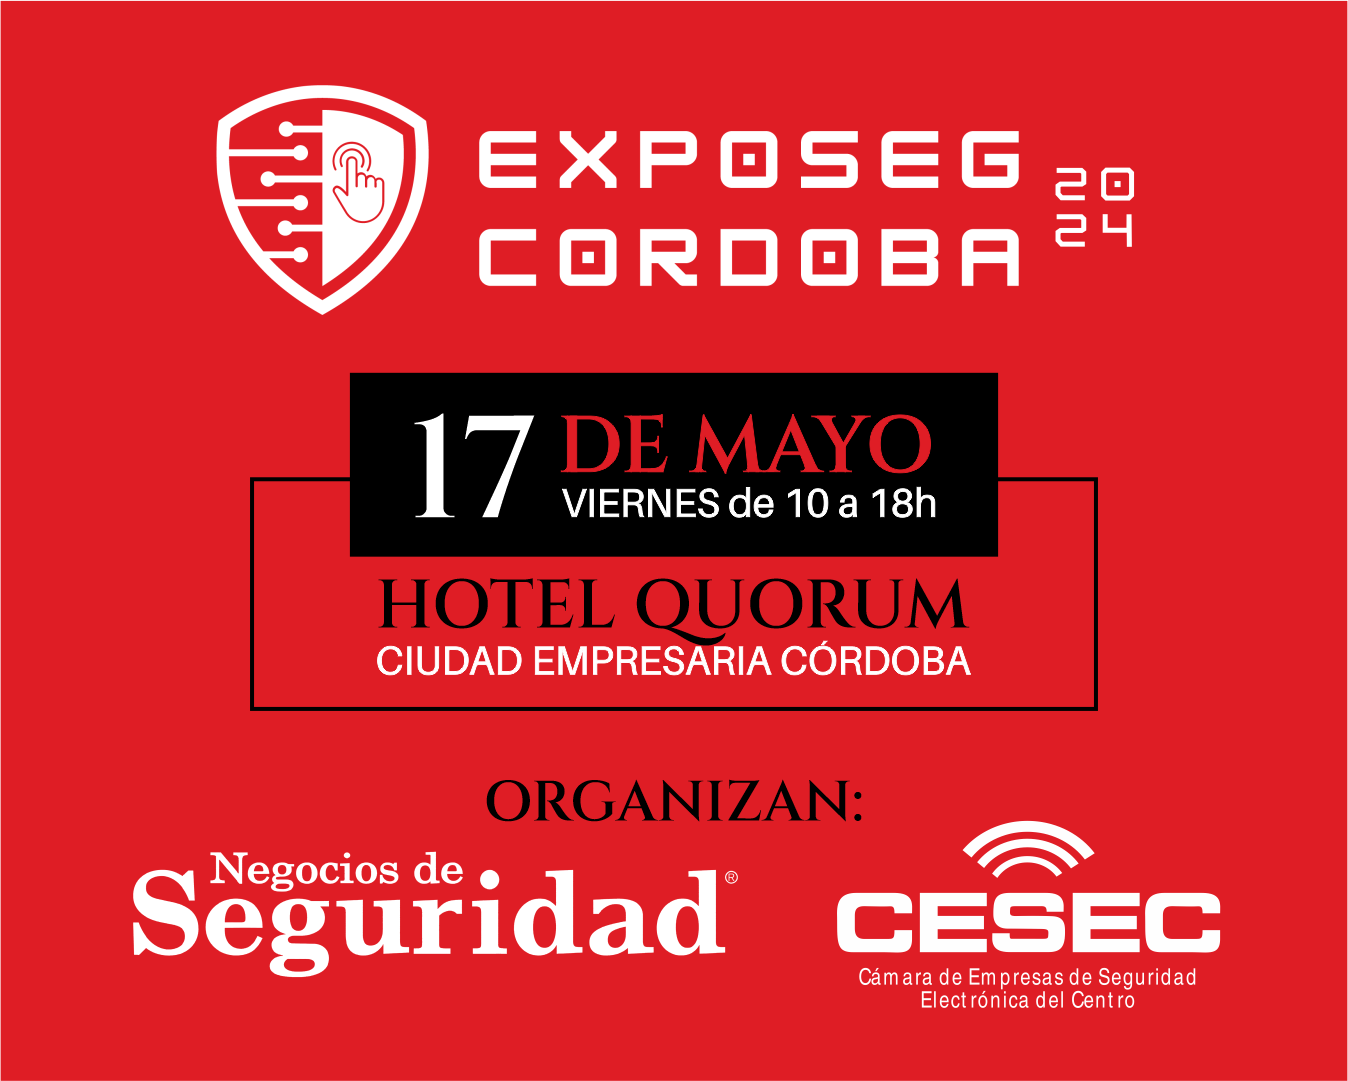 EXPOSEG Córdoba